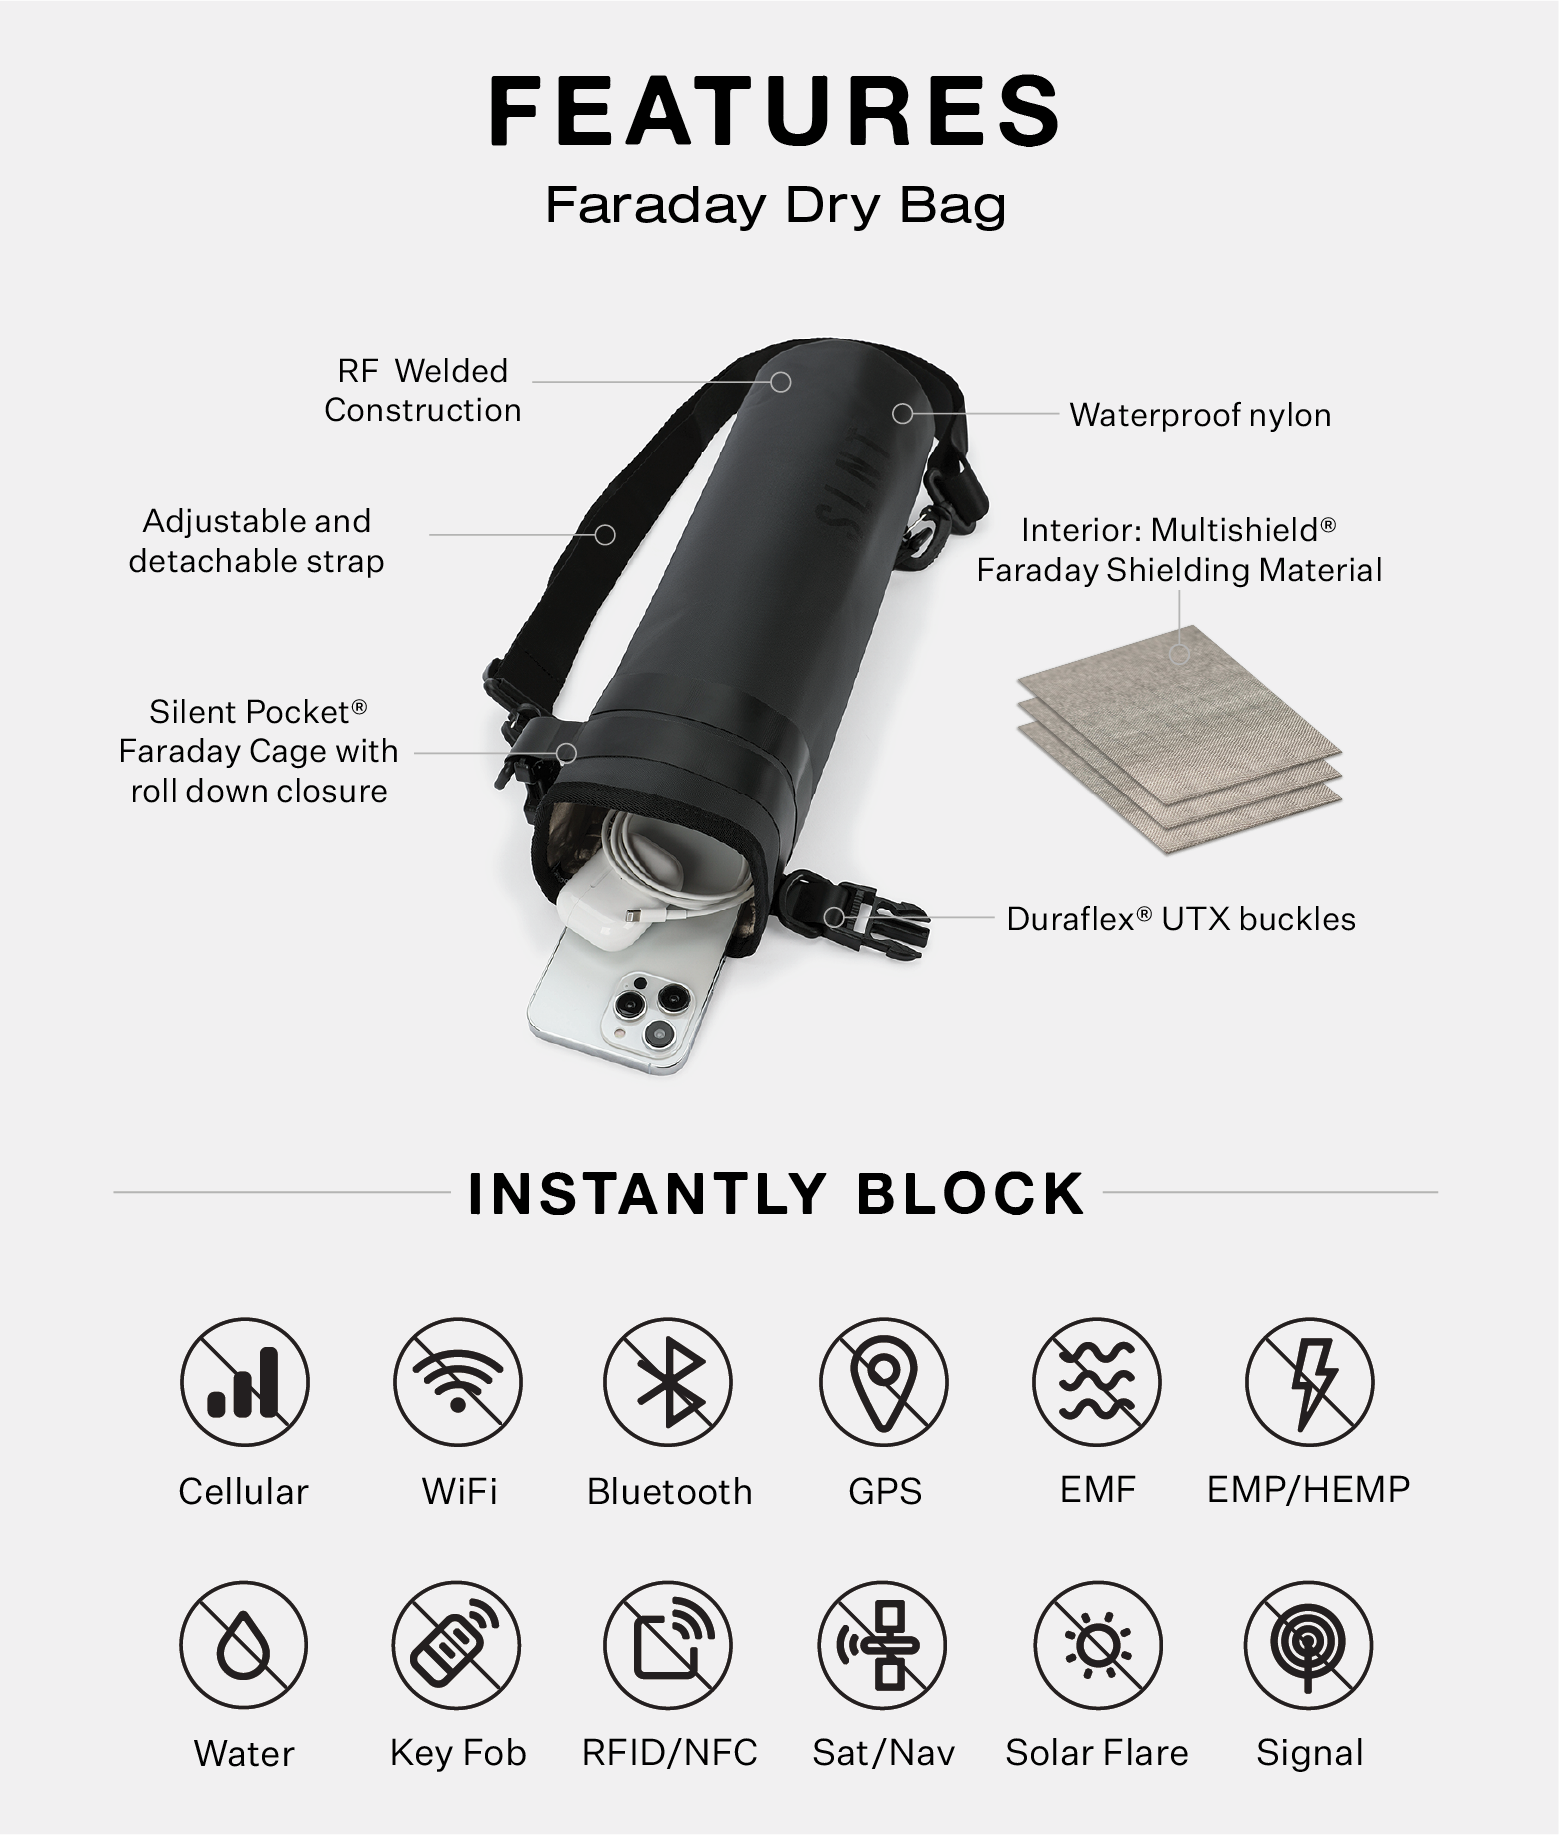 Faraday bag details